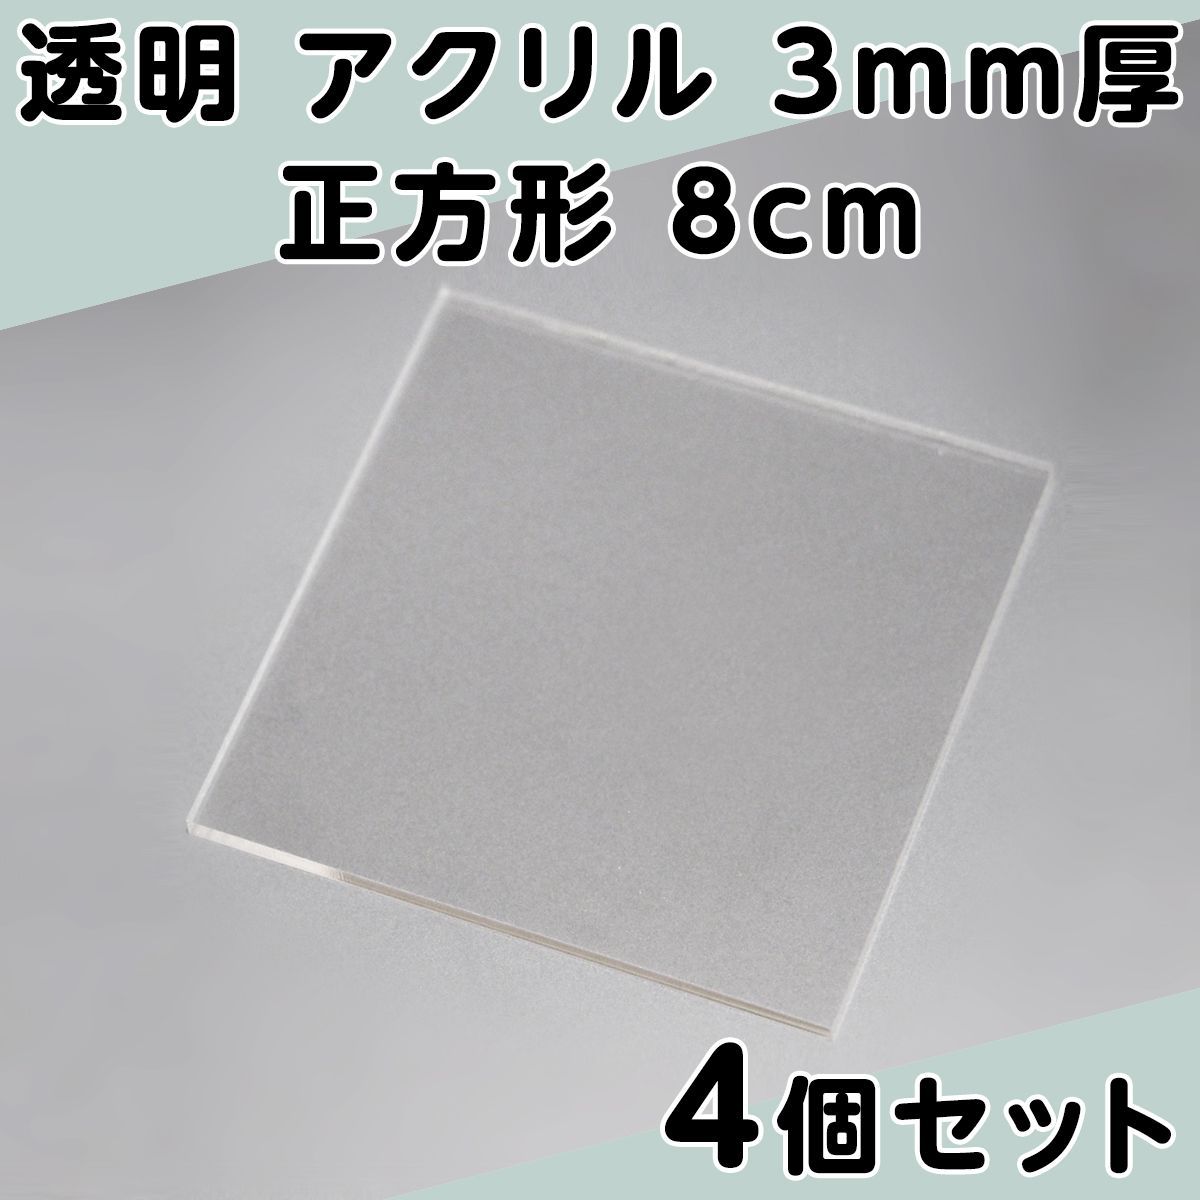 透明 アクリル 3mm厚 正方形 8cm 4個セット - メルカリ